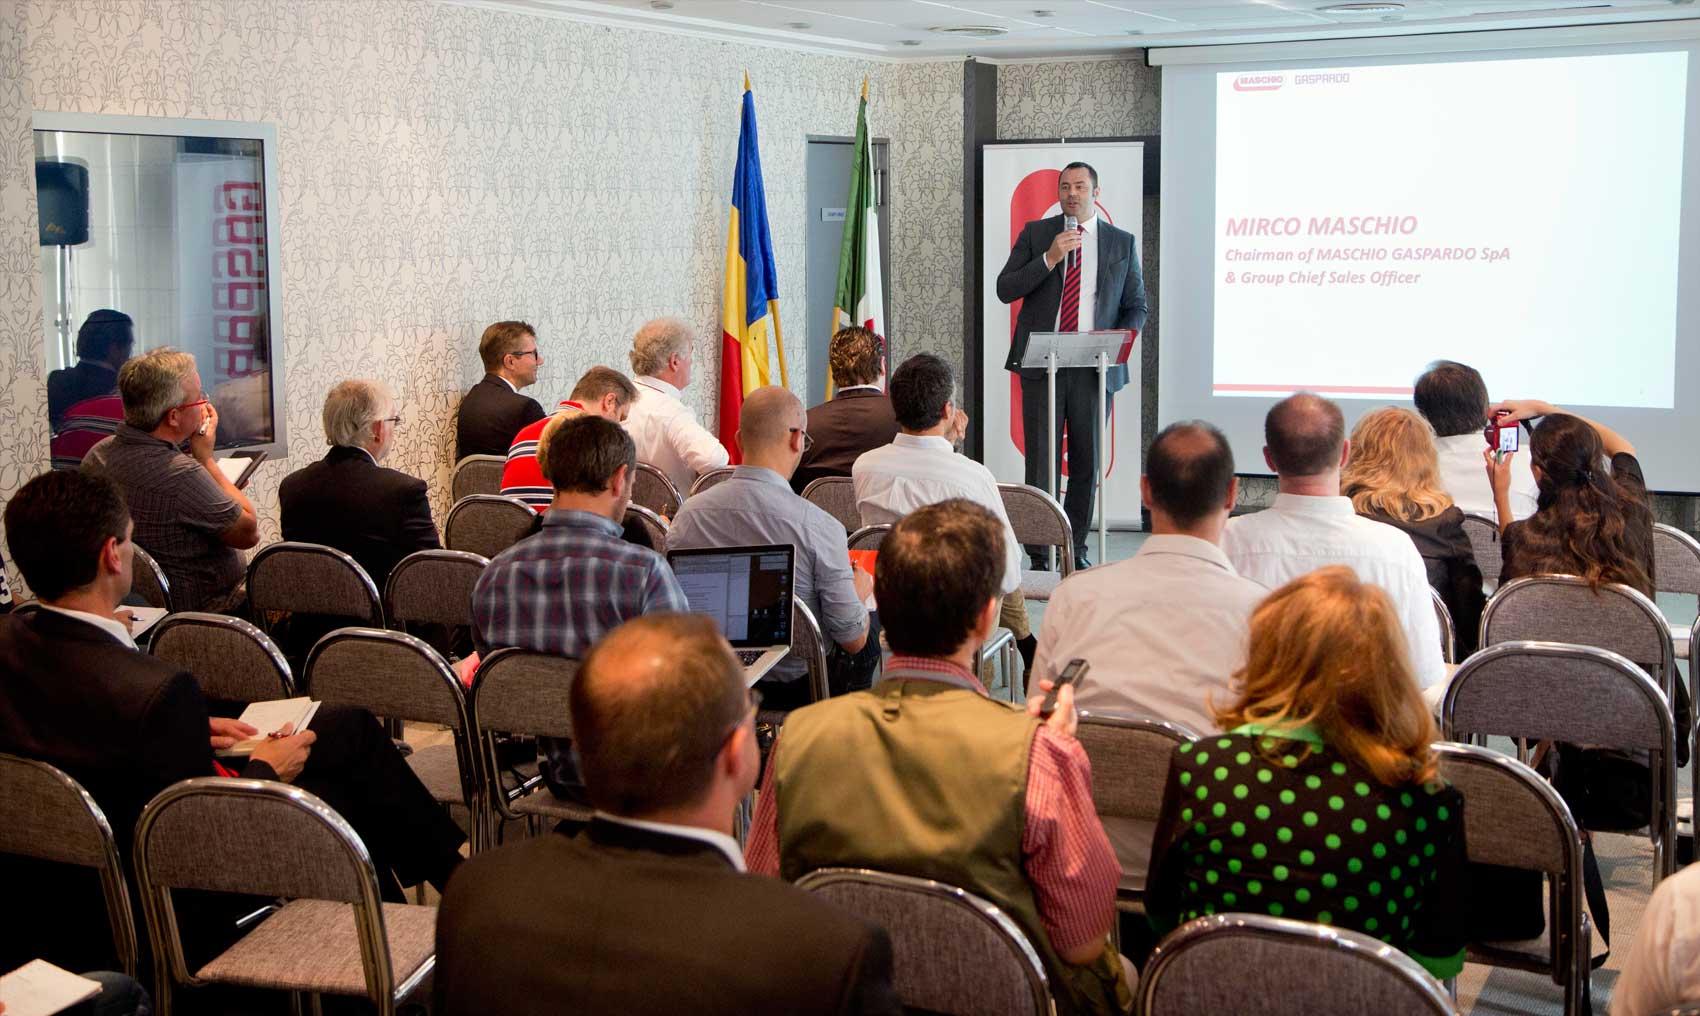 Mirco Maschio, presidente de la compaa, acogi personalmente a periodistas y distribuidores durante la visita a Rumana...